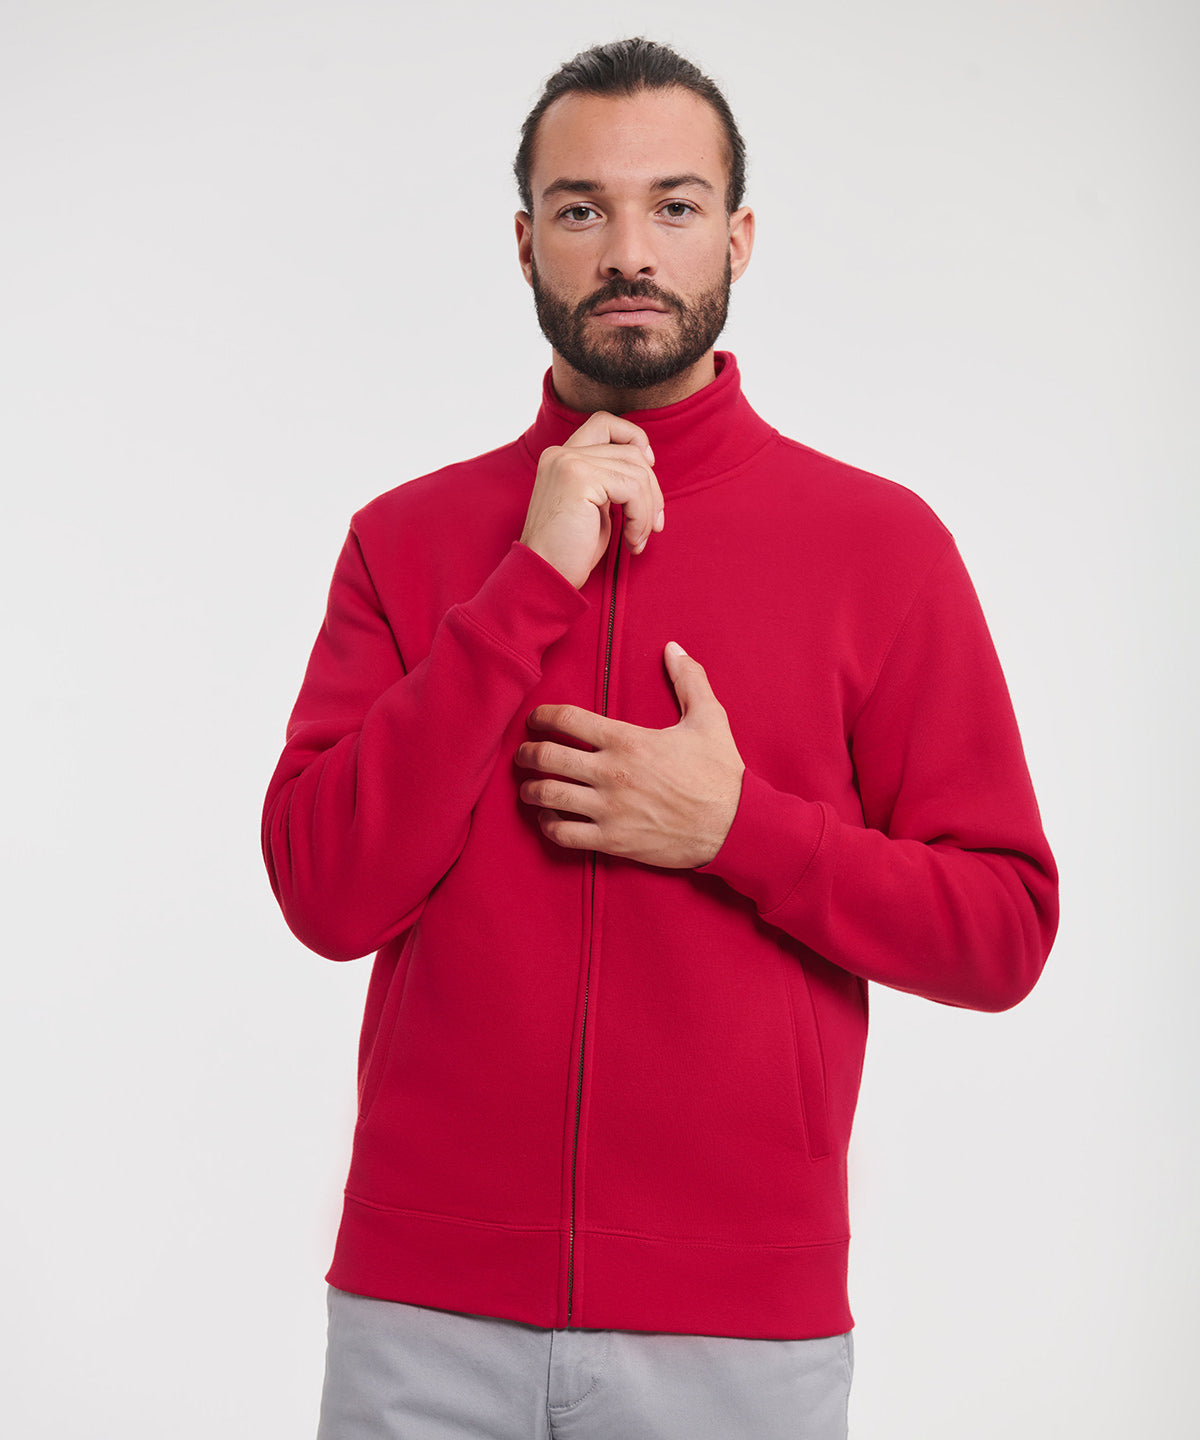 Háskólapeysur - Authentic Sweatshirt Jacket